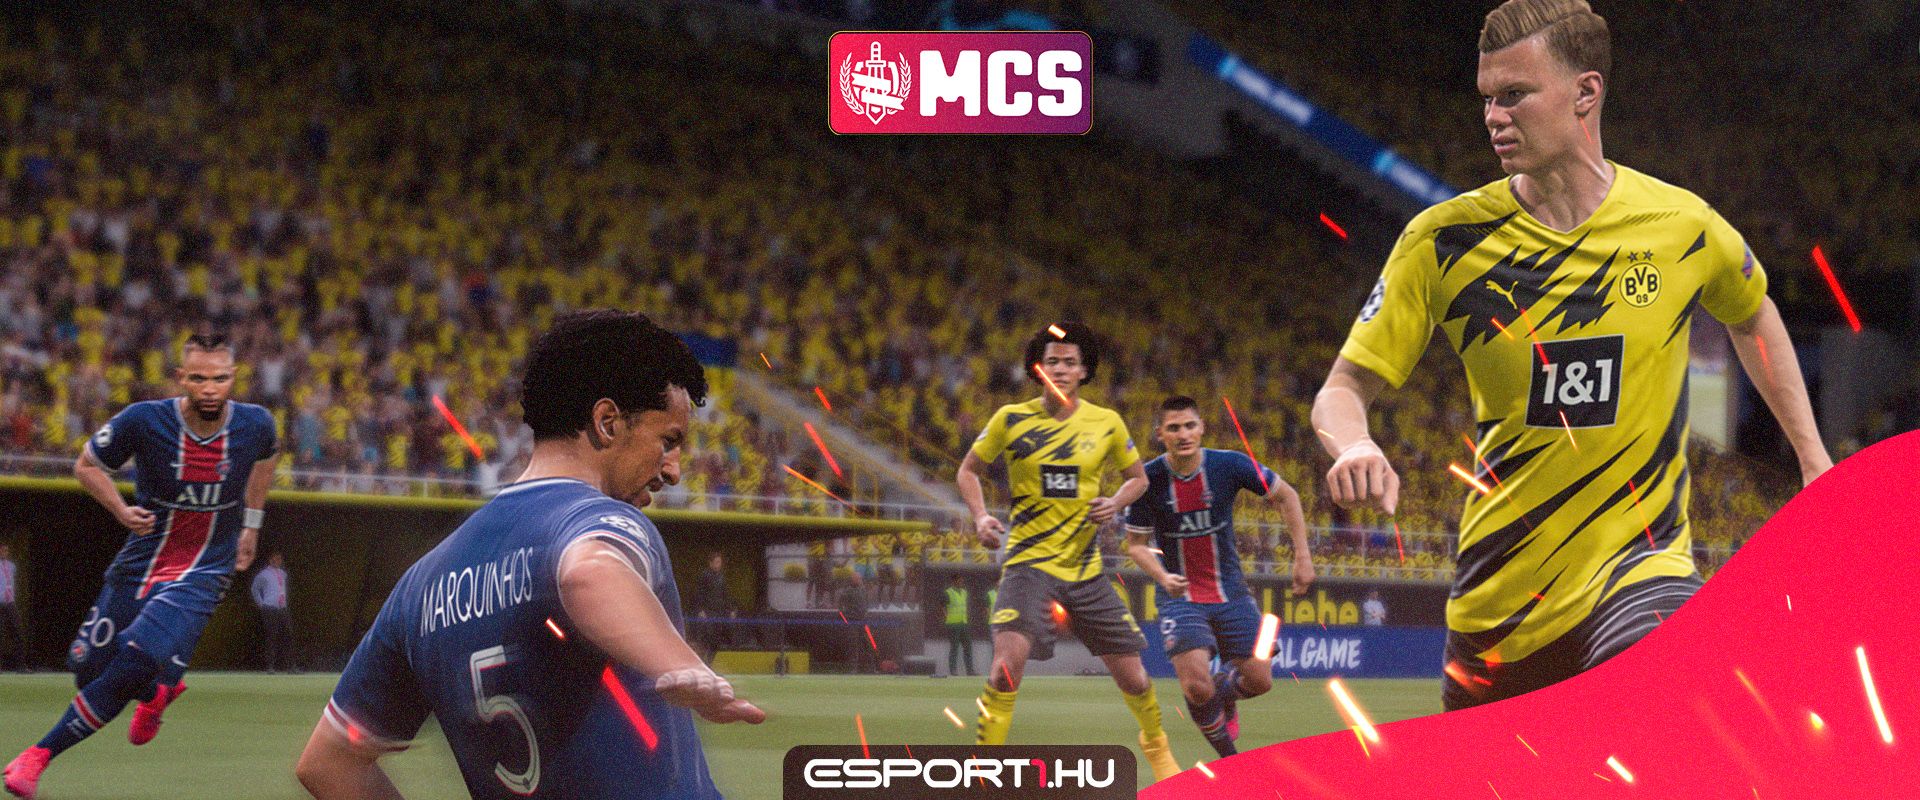 MCS FIFA 21 - PS4-en alig maradt kiadó hely, Xboxon viszont fokozódnak az izgalmak